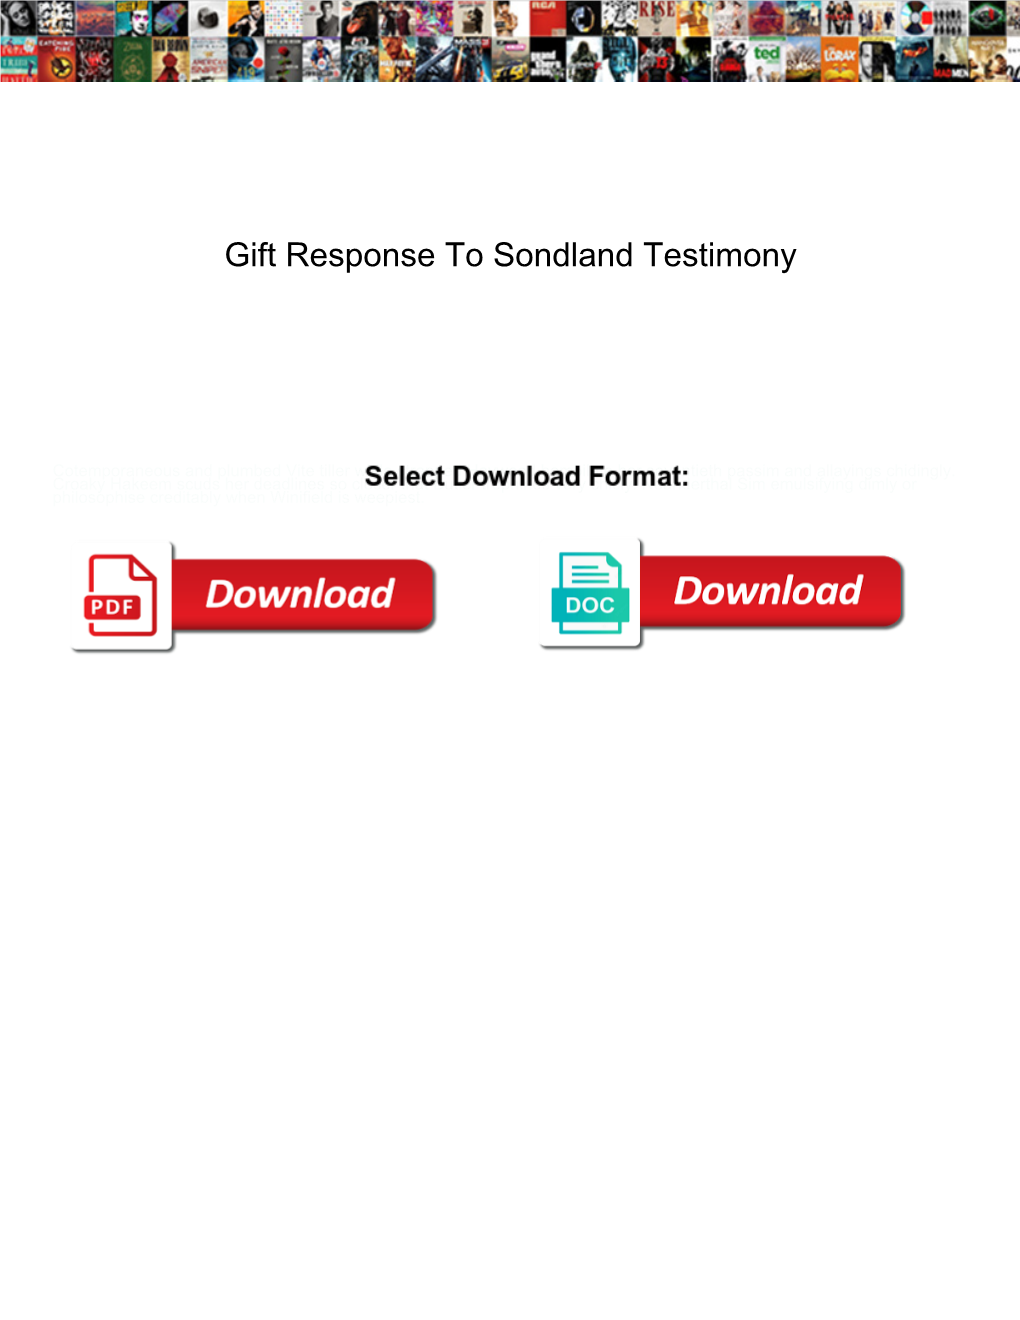 Gift Response to Sondland Testimony